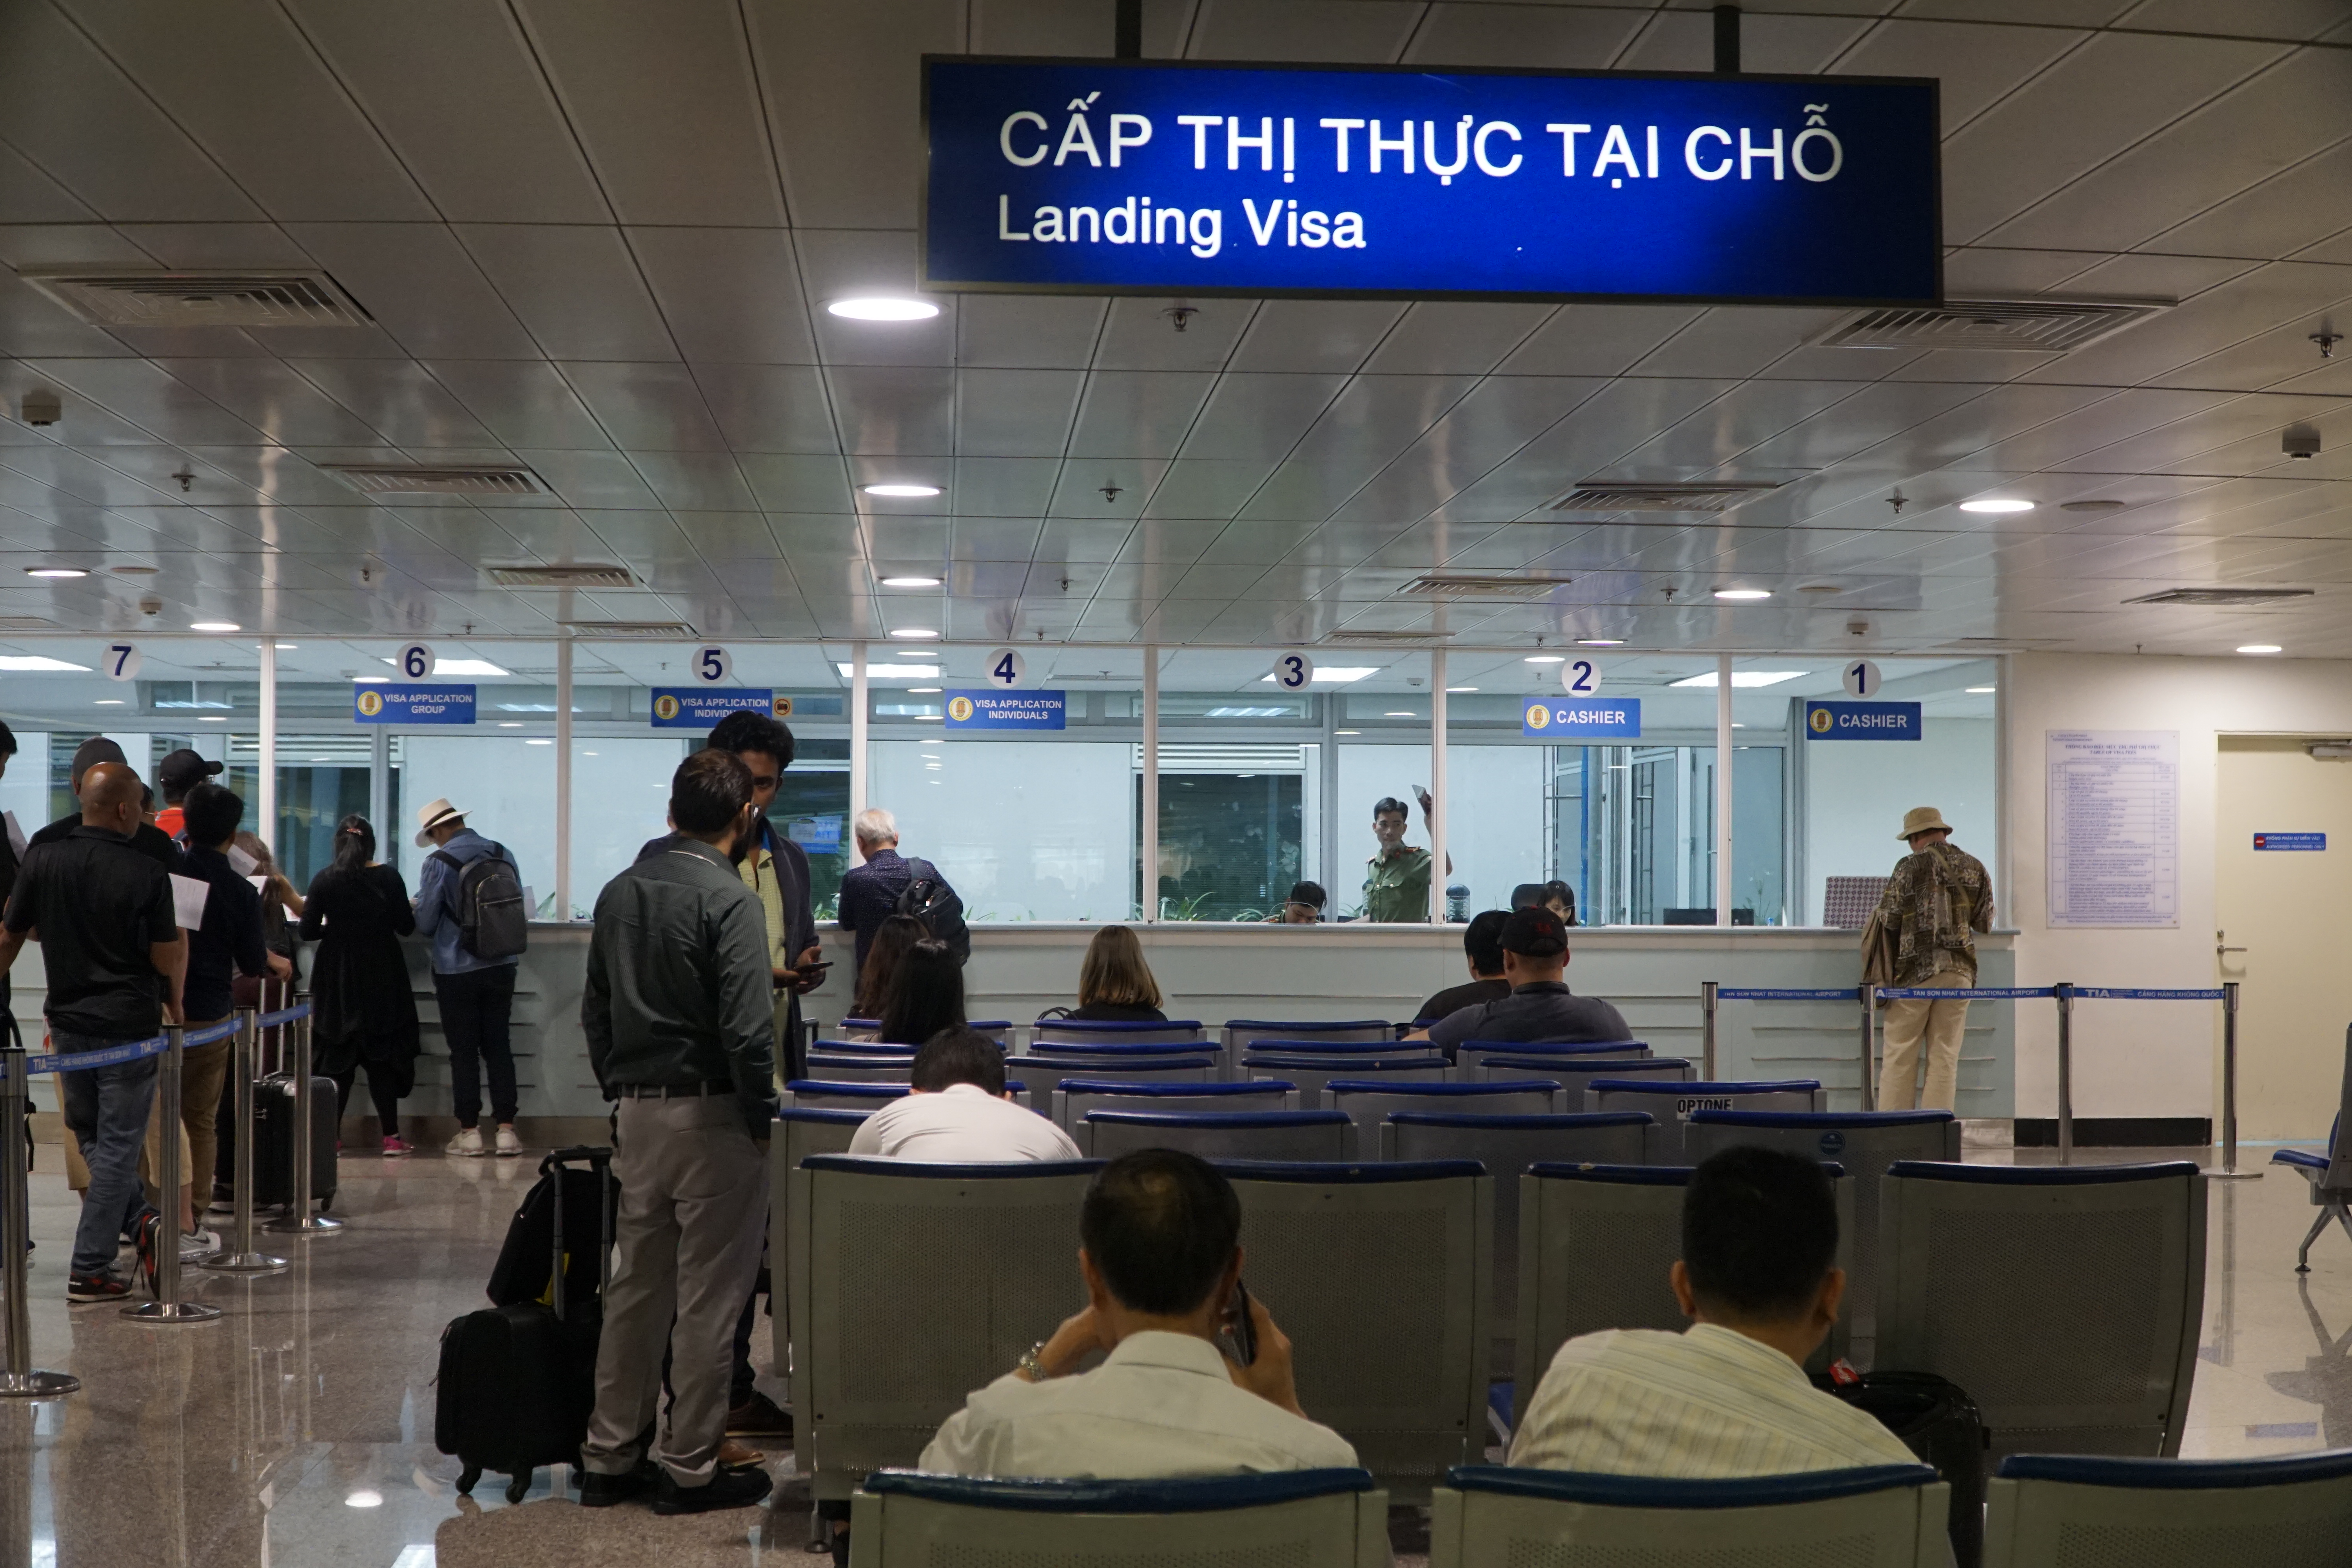 去越南能办理落地签证吗？